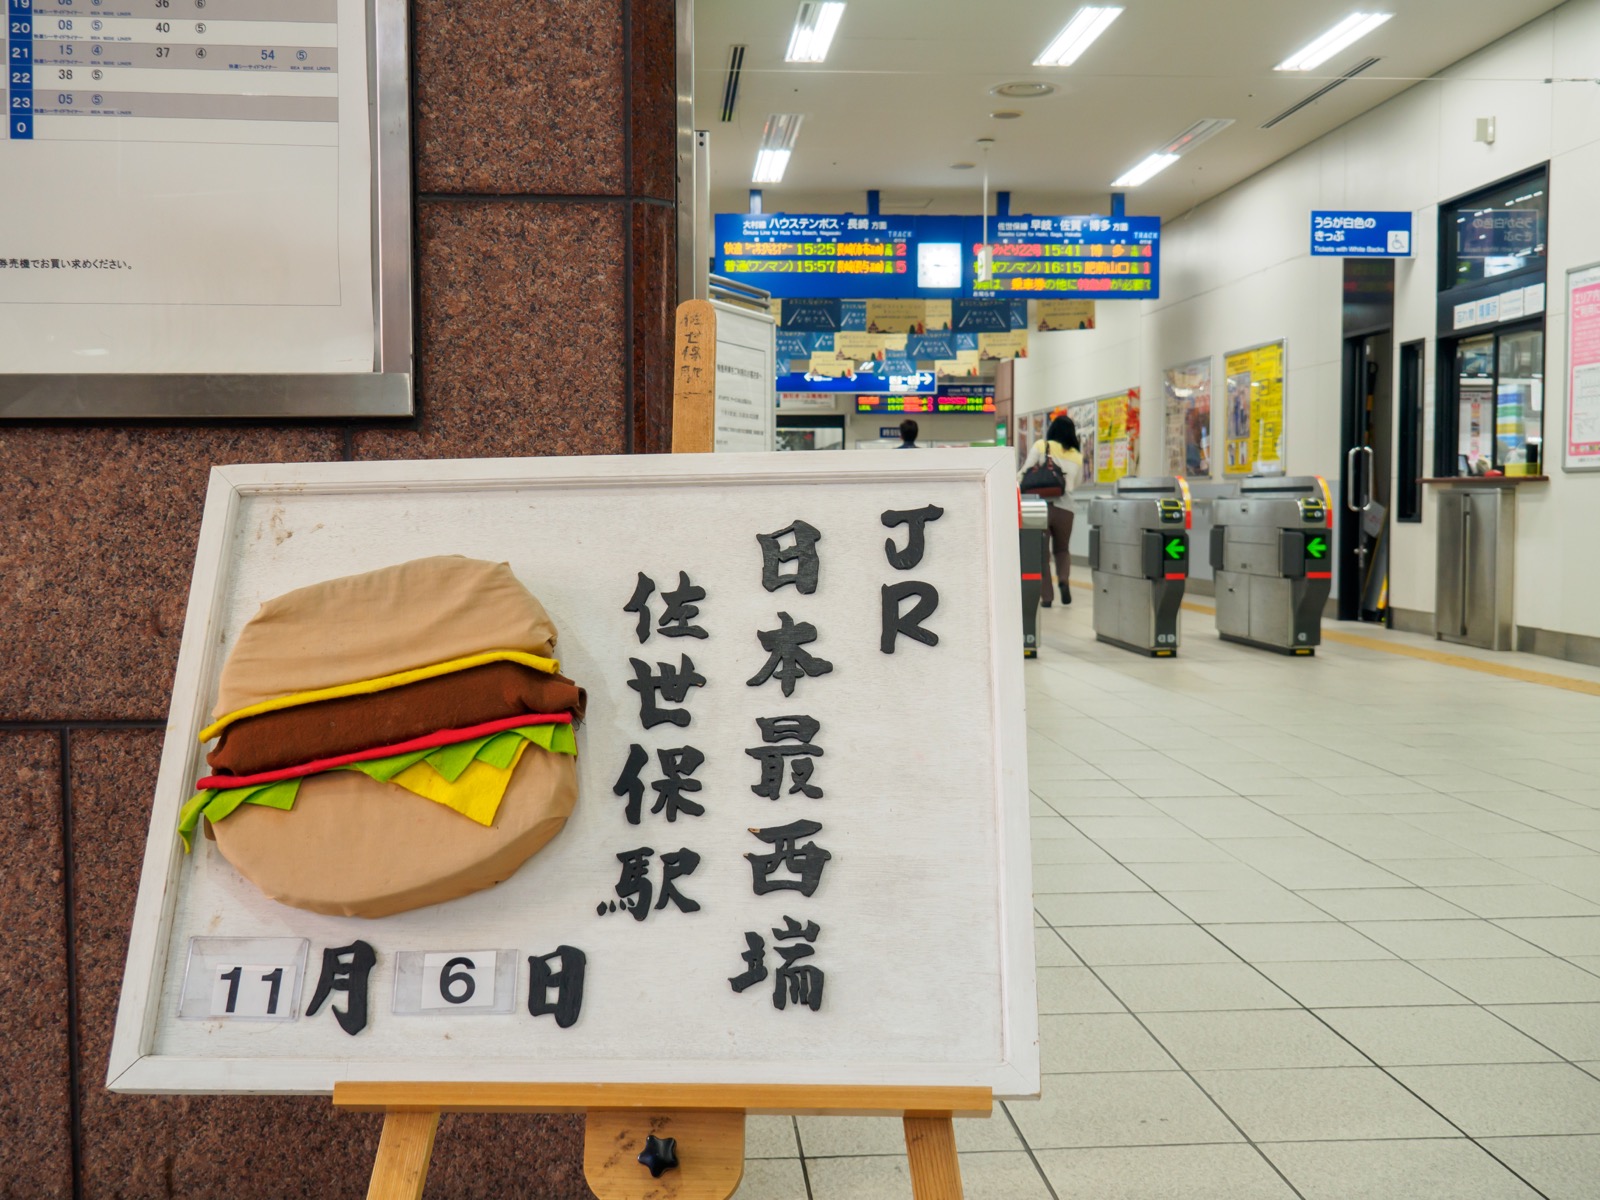 佐世保駅にあった、JR日本最西端を示す立て看板（2016年11月）